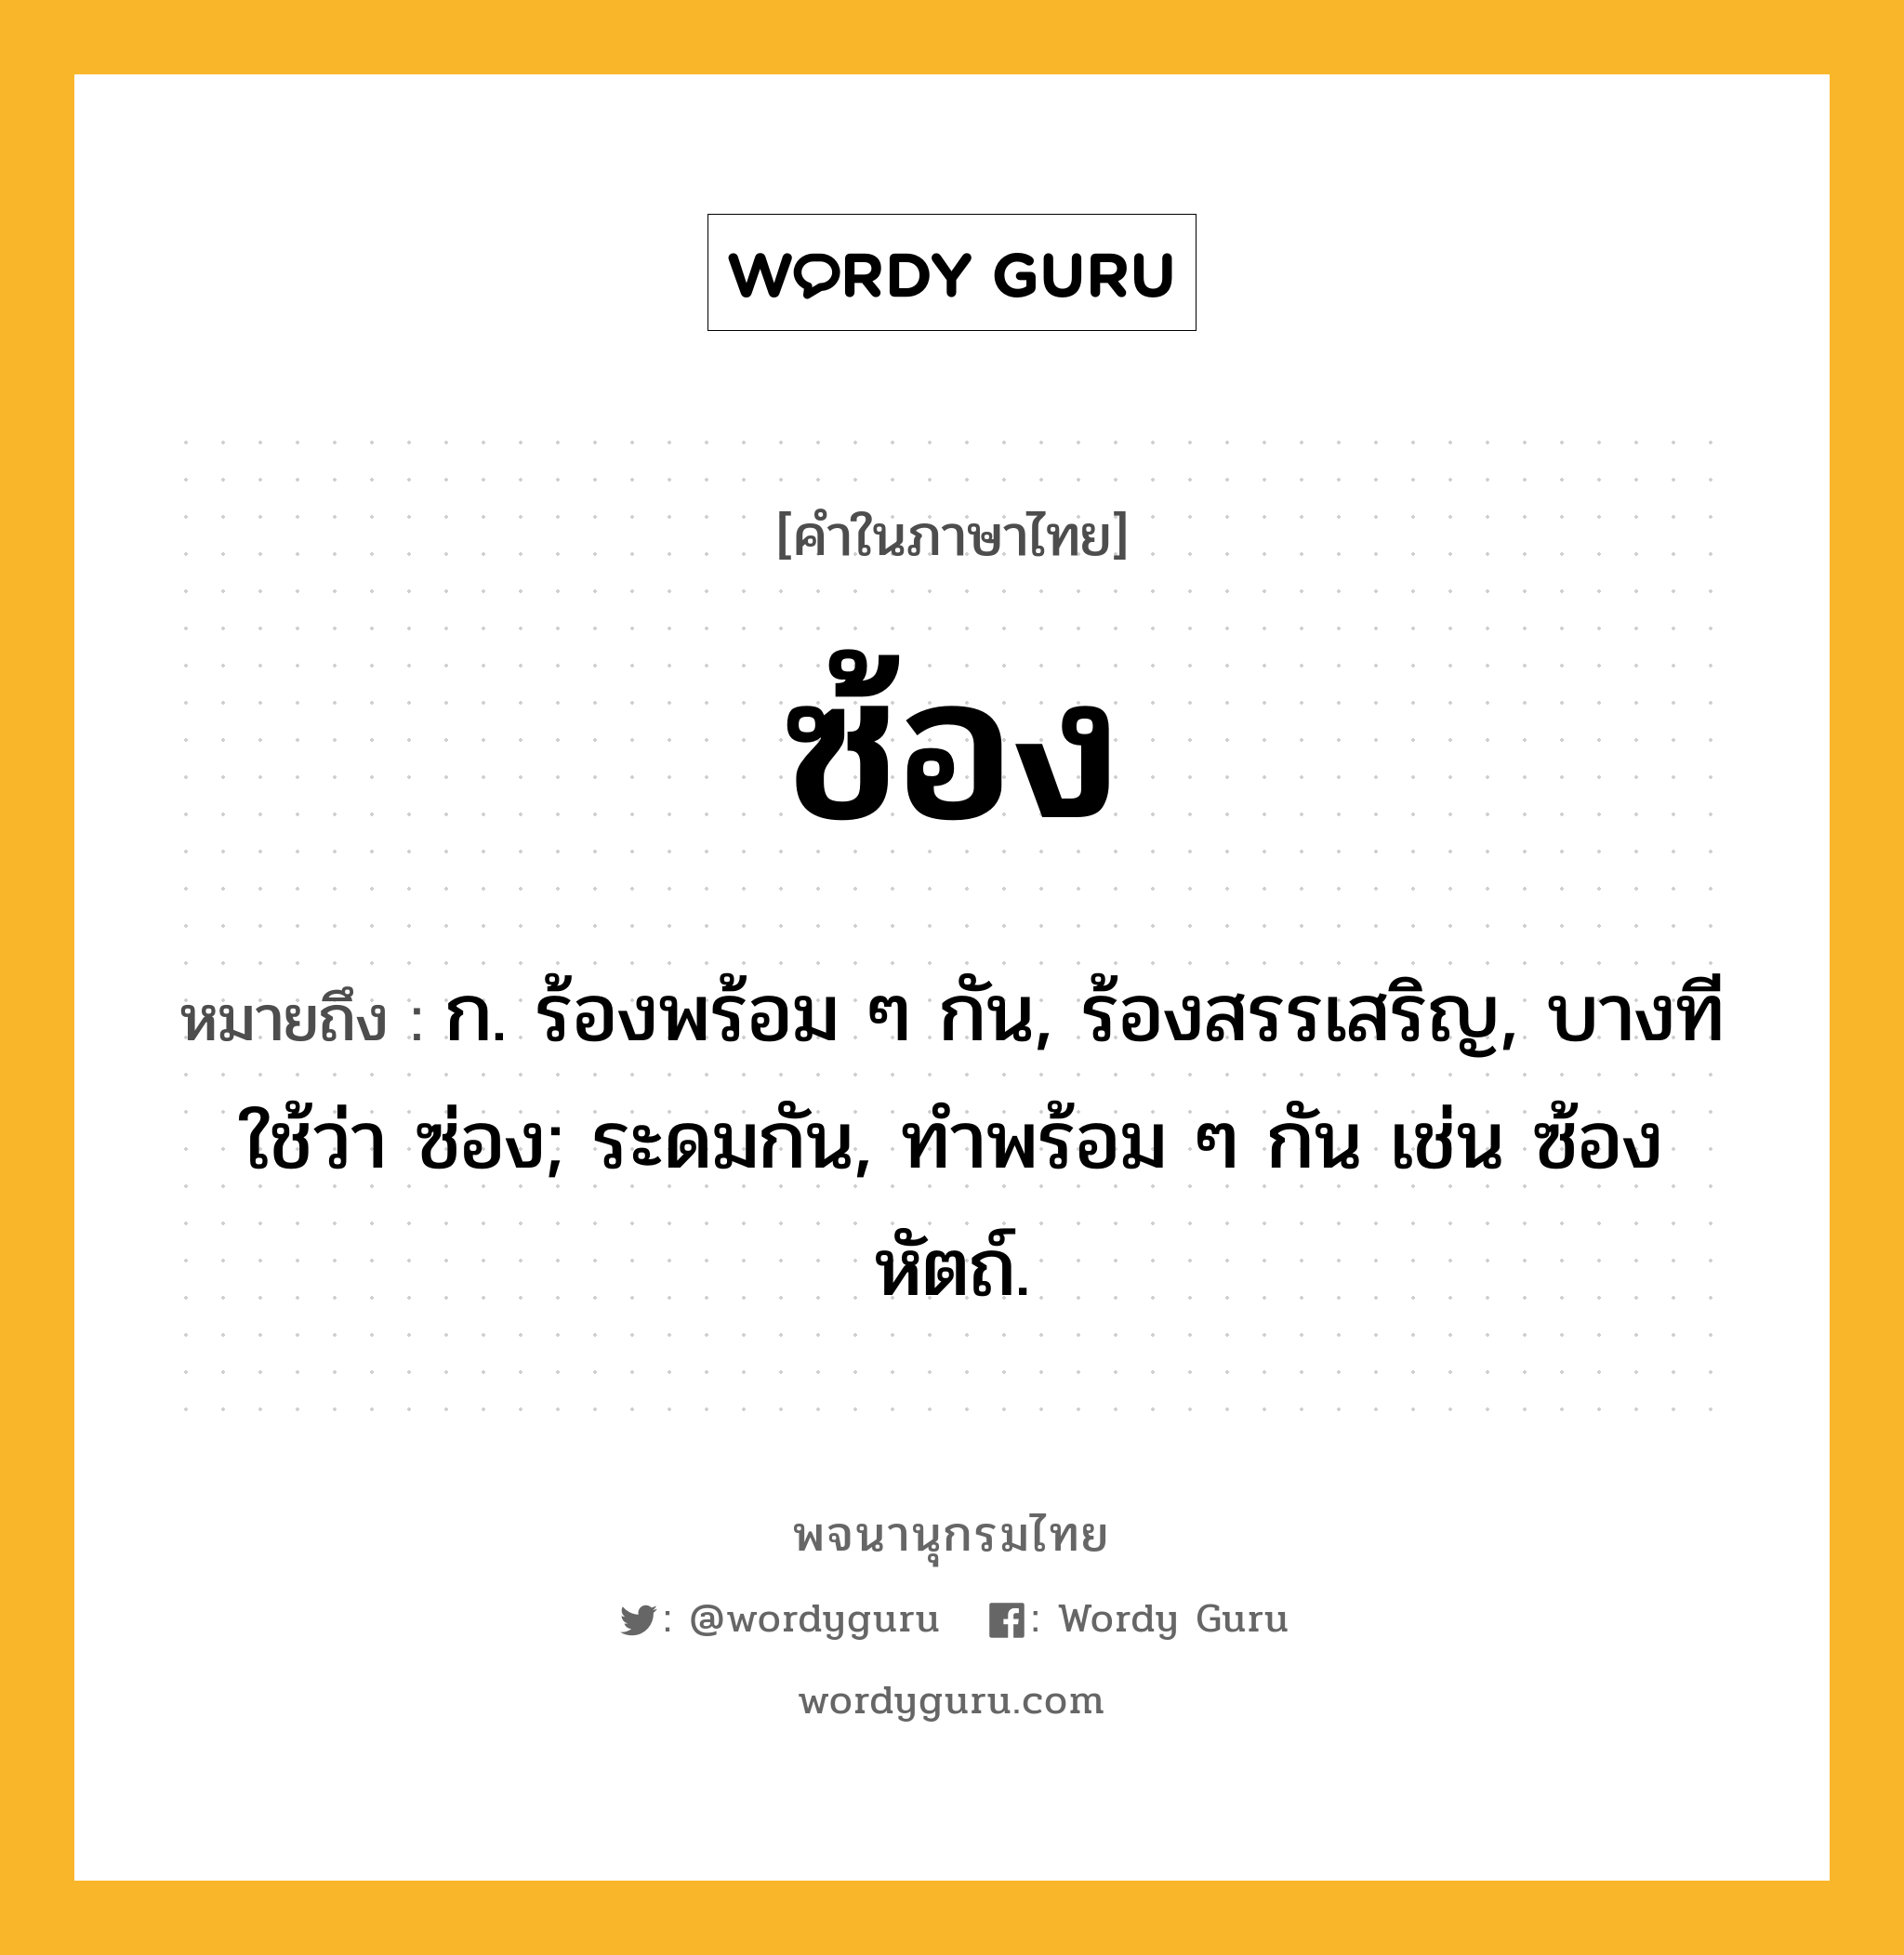 ซ้อง หมายถึงอะไร?, คำในภาษาไทย ซ้อง หมายถึง ก. ร้องพร้อม ๆ กัน, ร้องสรรเสริญ, บางทีใช้ว่า ซ่อง; ระดมกัน, ทําพร้อม ๆ กัน เช่น ซ้องหัตถ์.